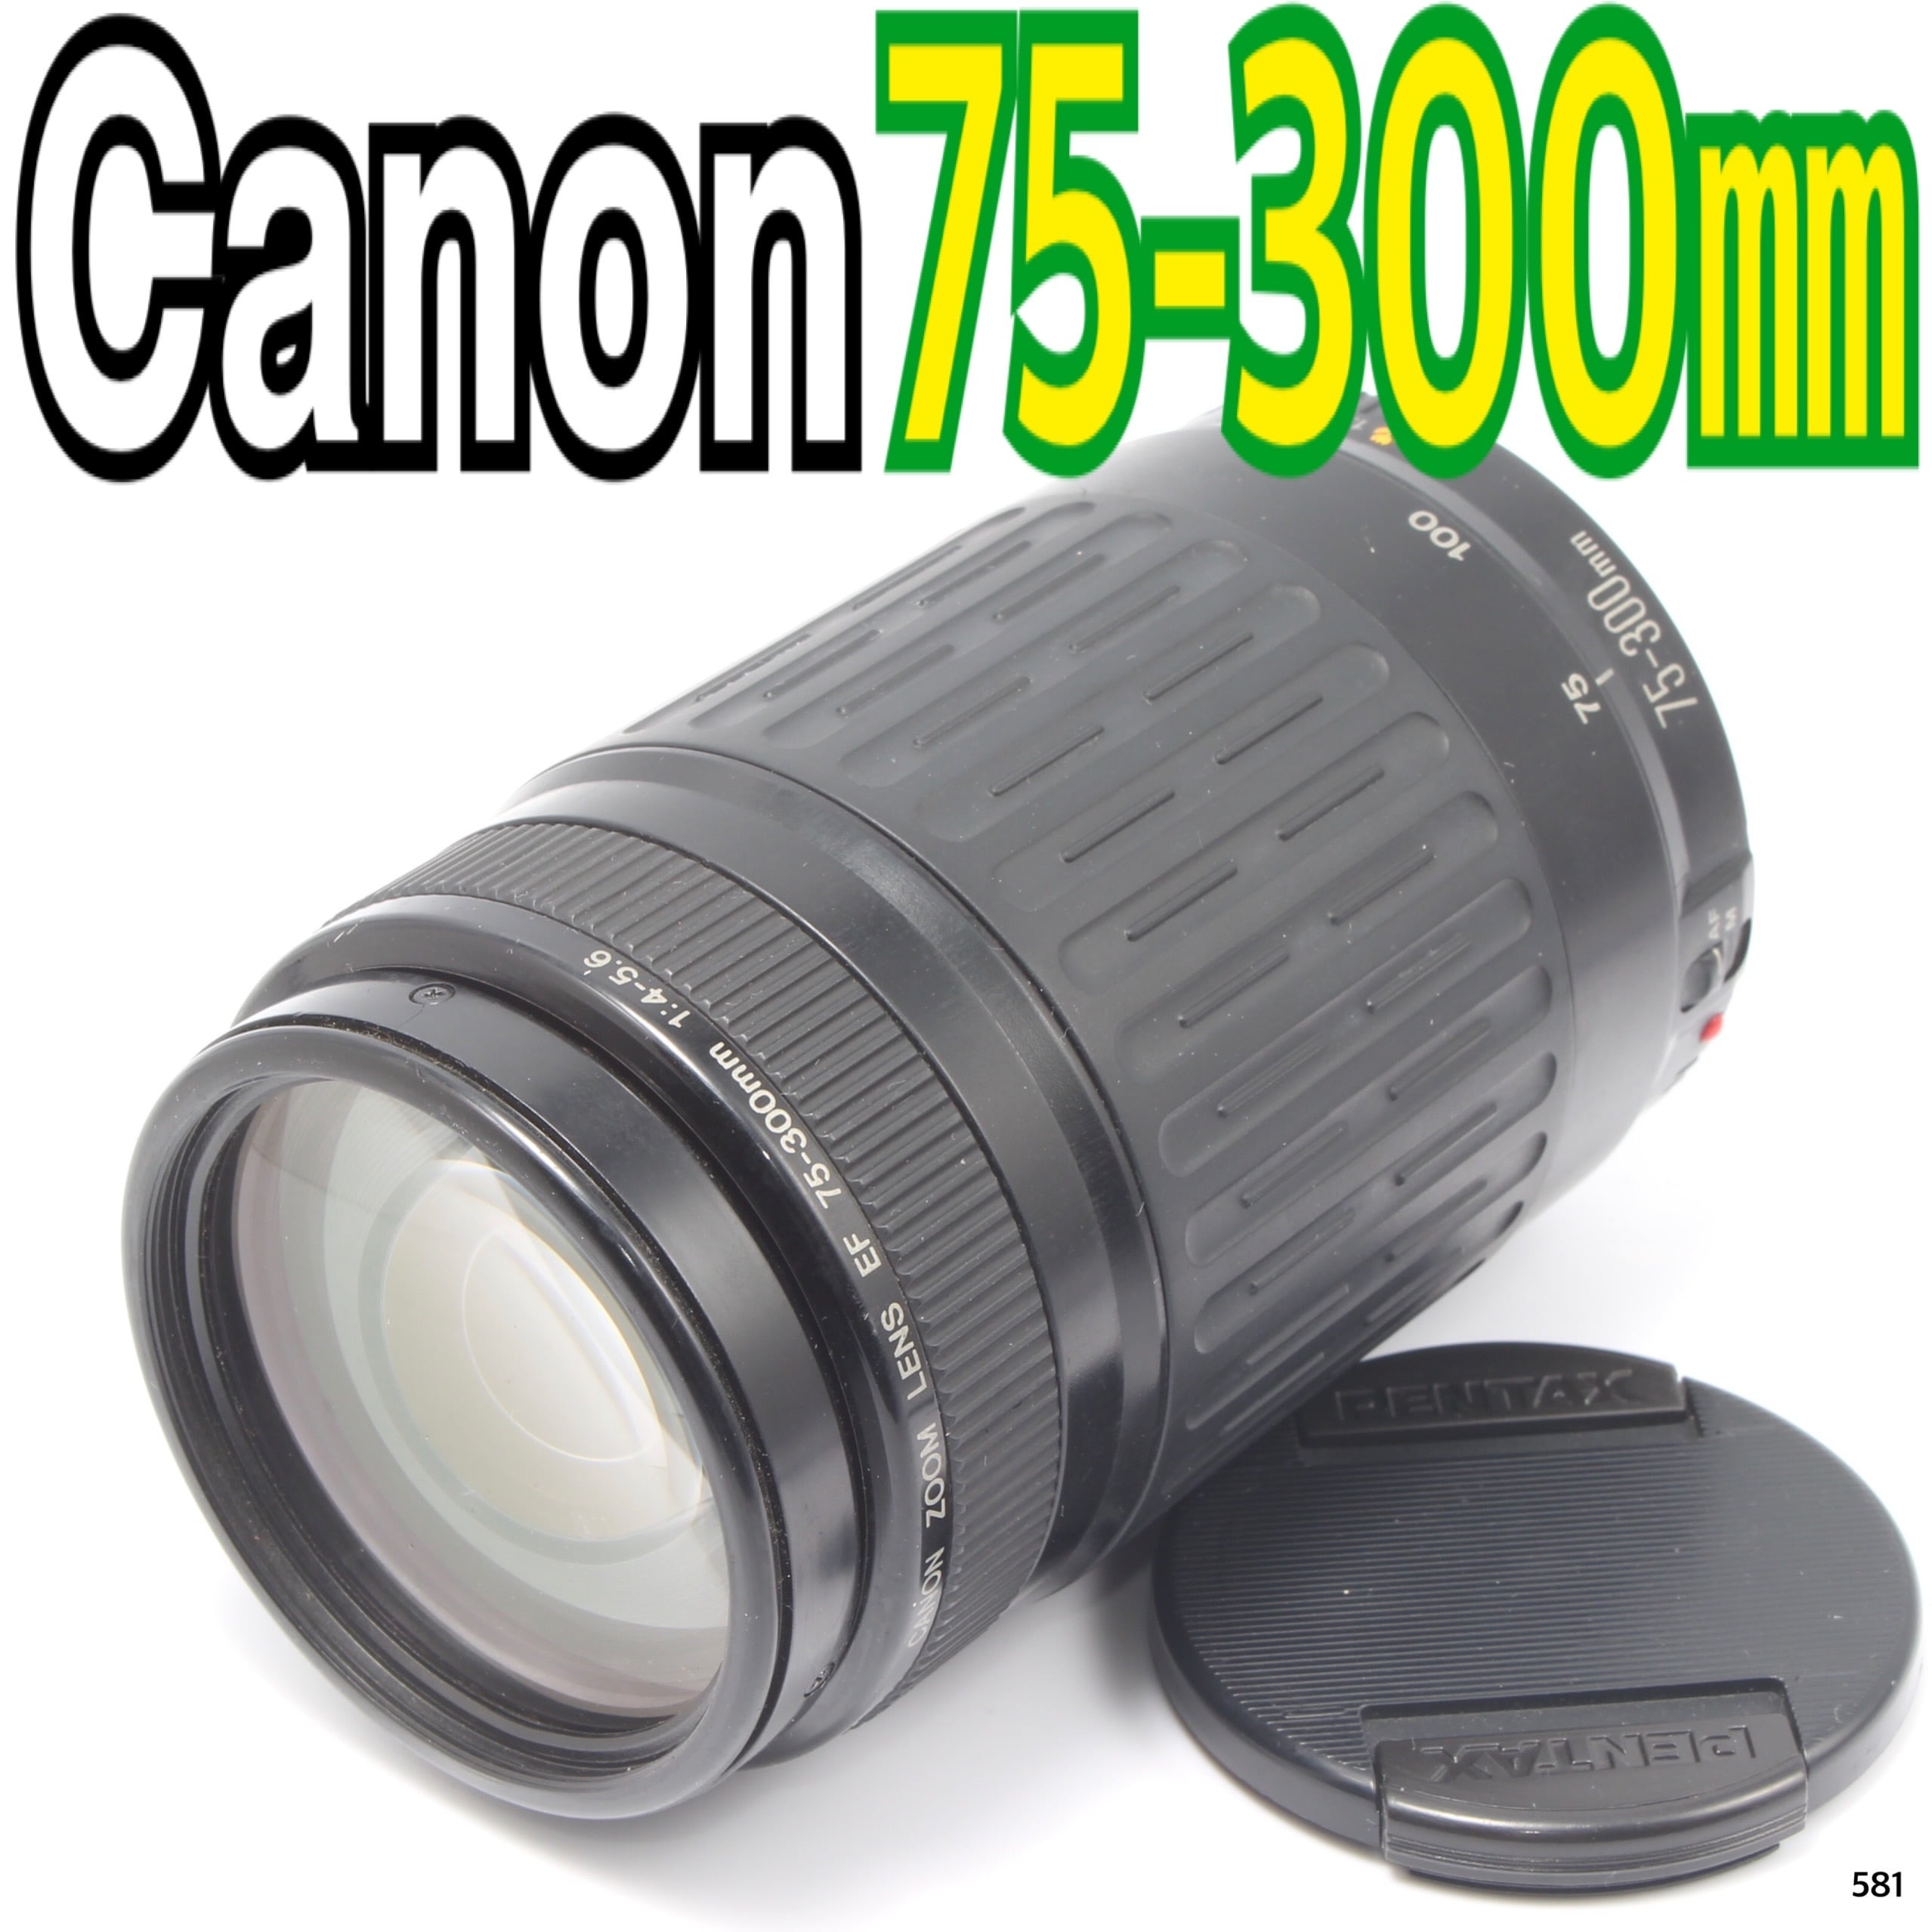 望遠レンズ☆スポーツ☆イベント☆キャノン Canon EF75-300㎜ - レンズ